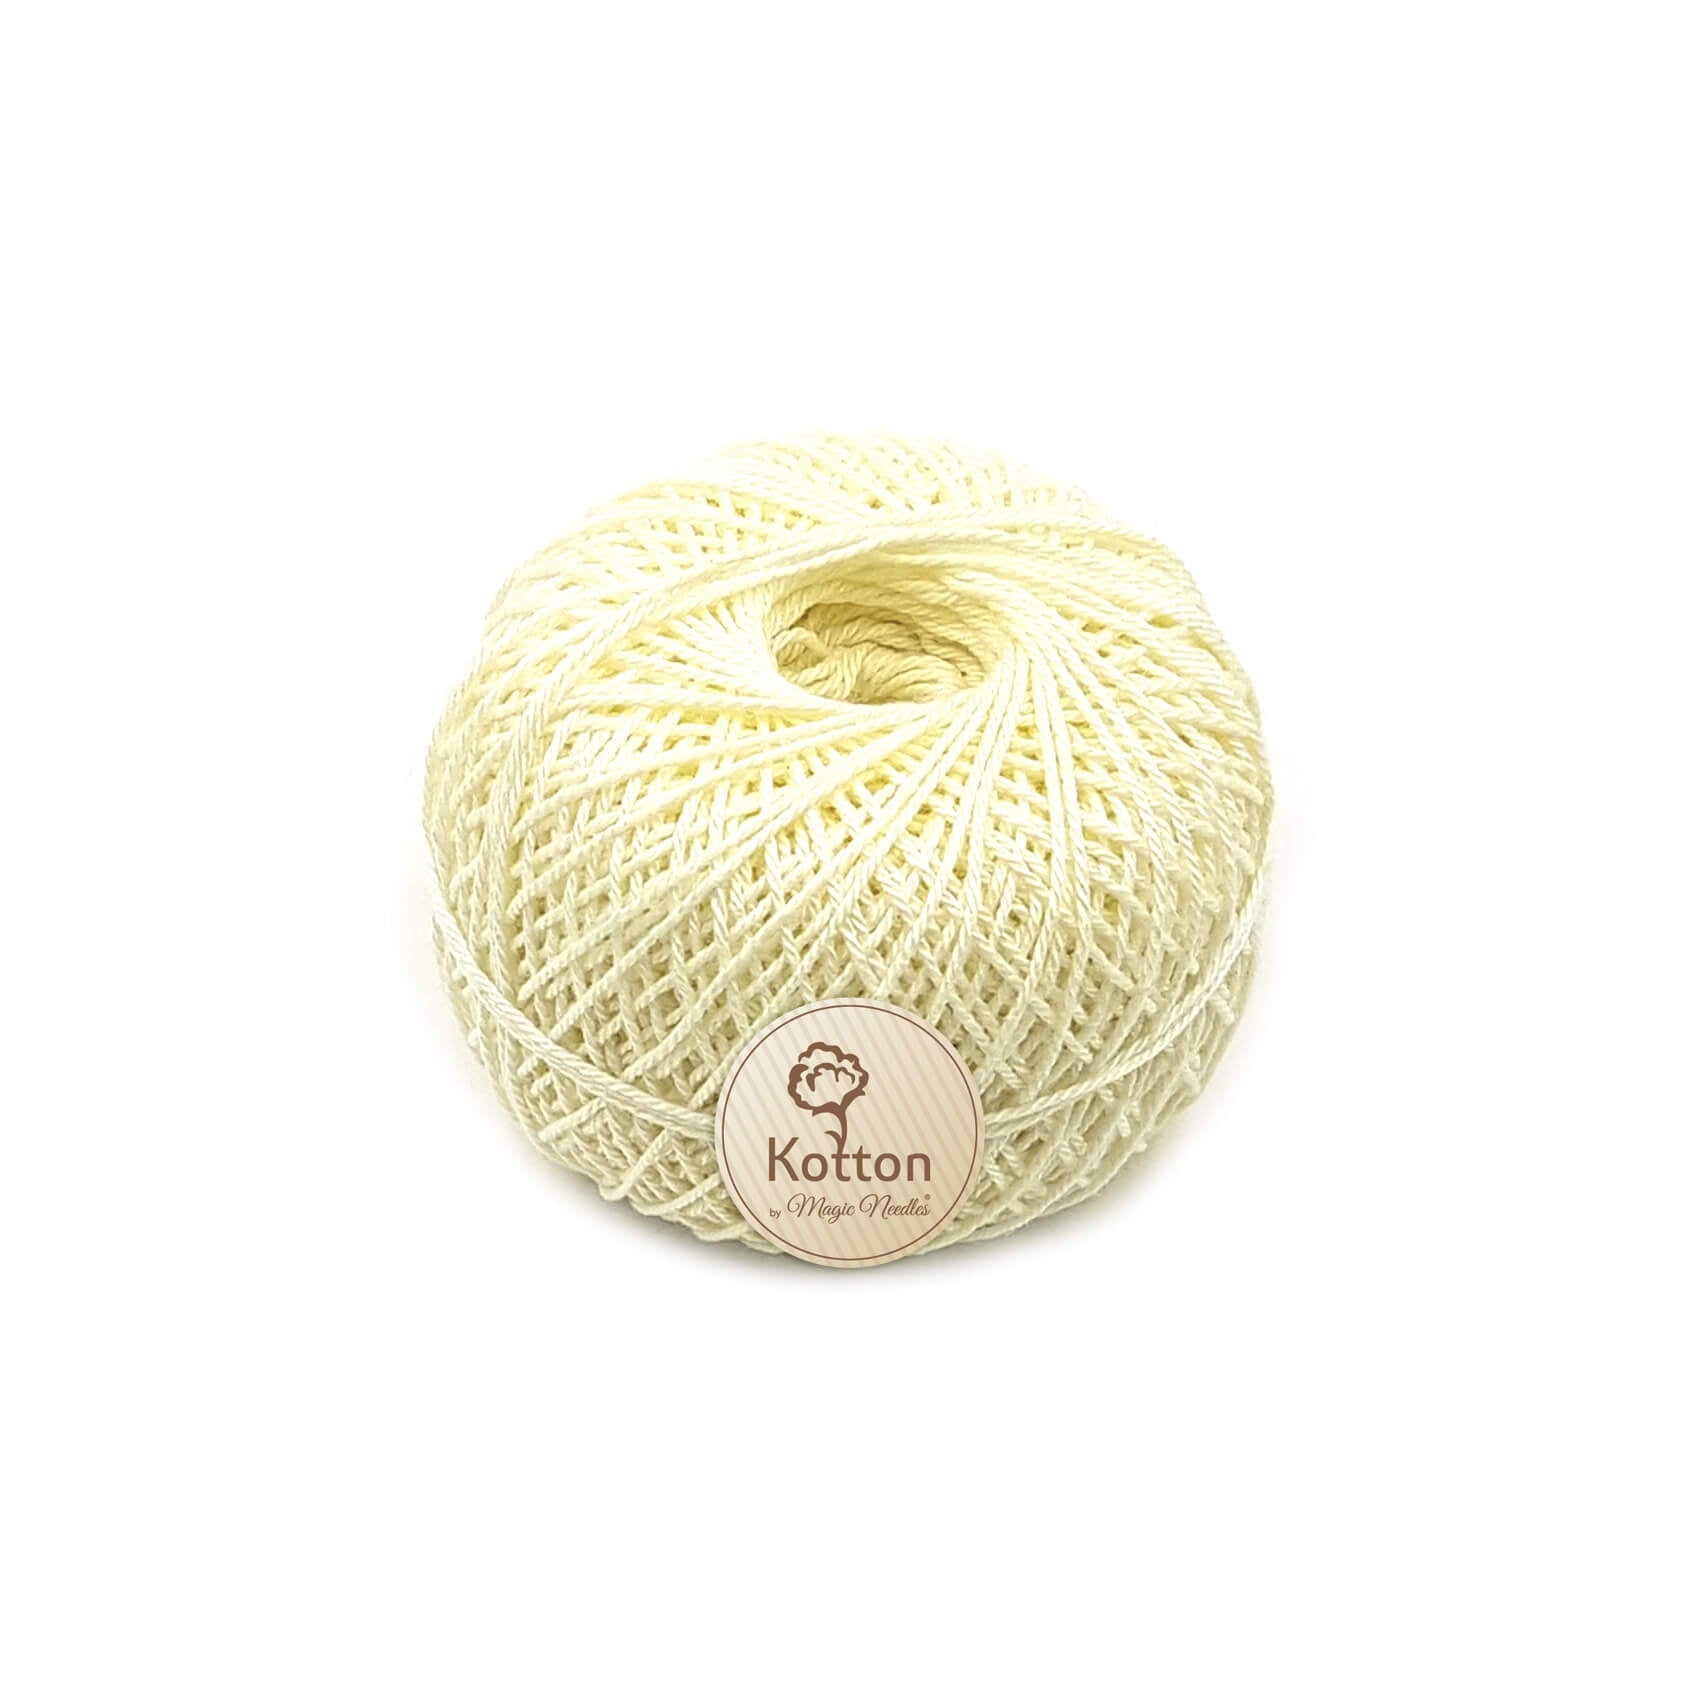 Kotton 3 ply Mercerised Cotton Yarn - Mild Yellow 03